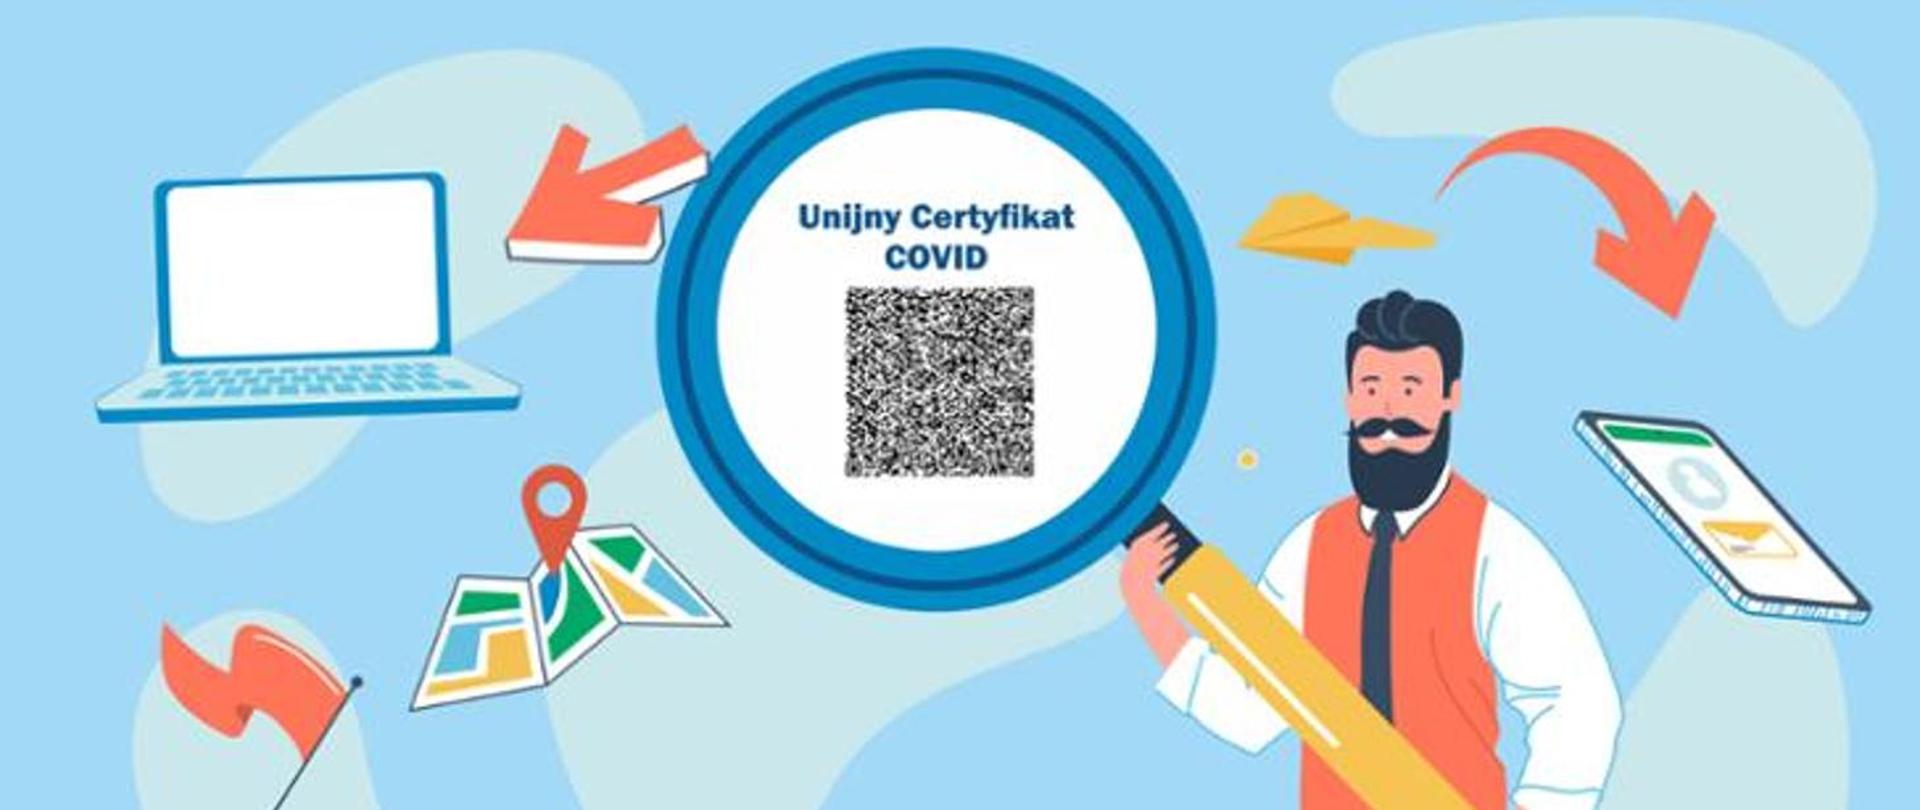 Grafika przedstawia postać trzymającą lupę, gdzie widnieje napis: Unijny Certyfikat COVID wraz z kodem QR. Tło jest niebieskie, na którym znajduje się laptop, telefon oraz mapa z symbolem lokalizacji.